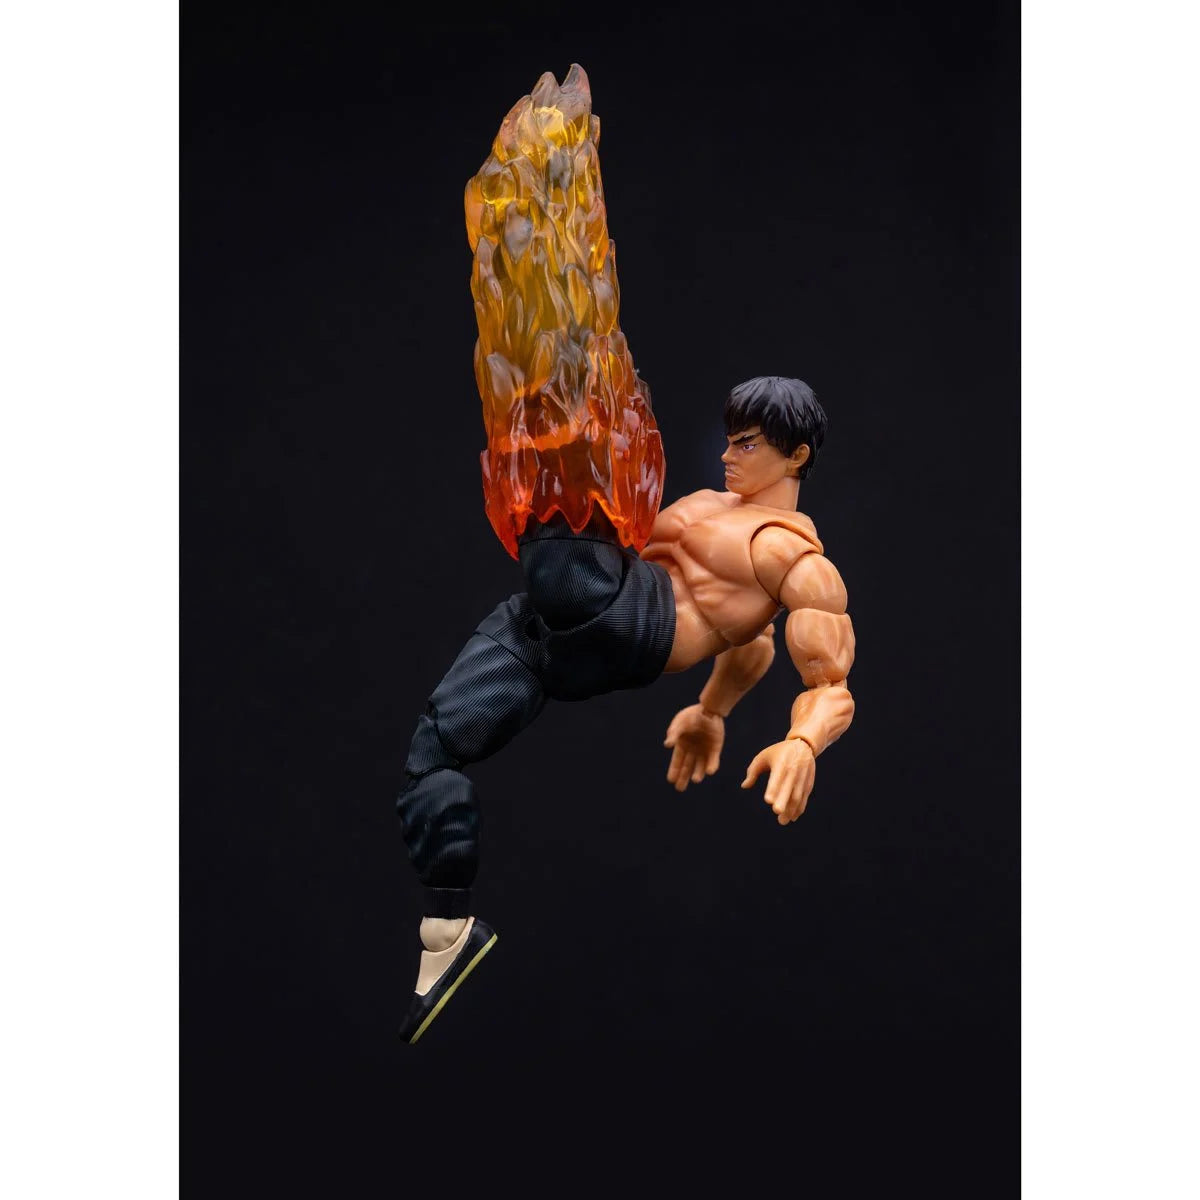 Ultra Street Fighter II - Fei Long - 6-Inch Action Figure